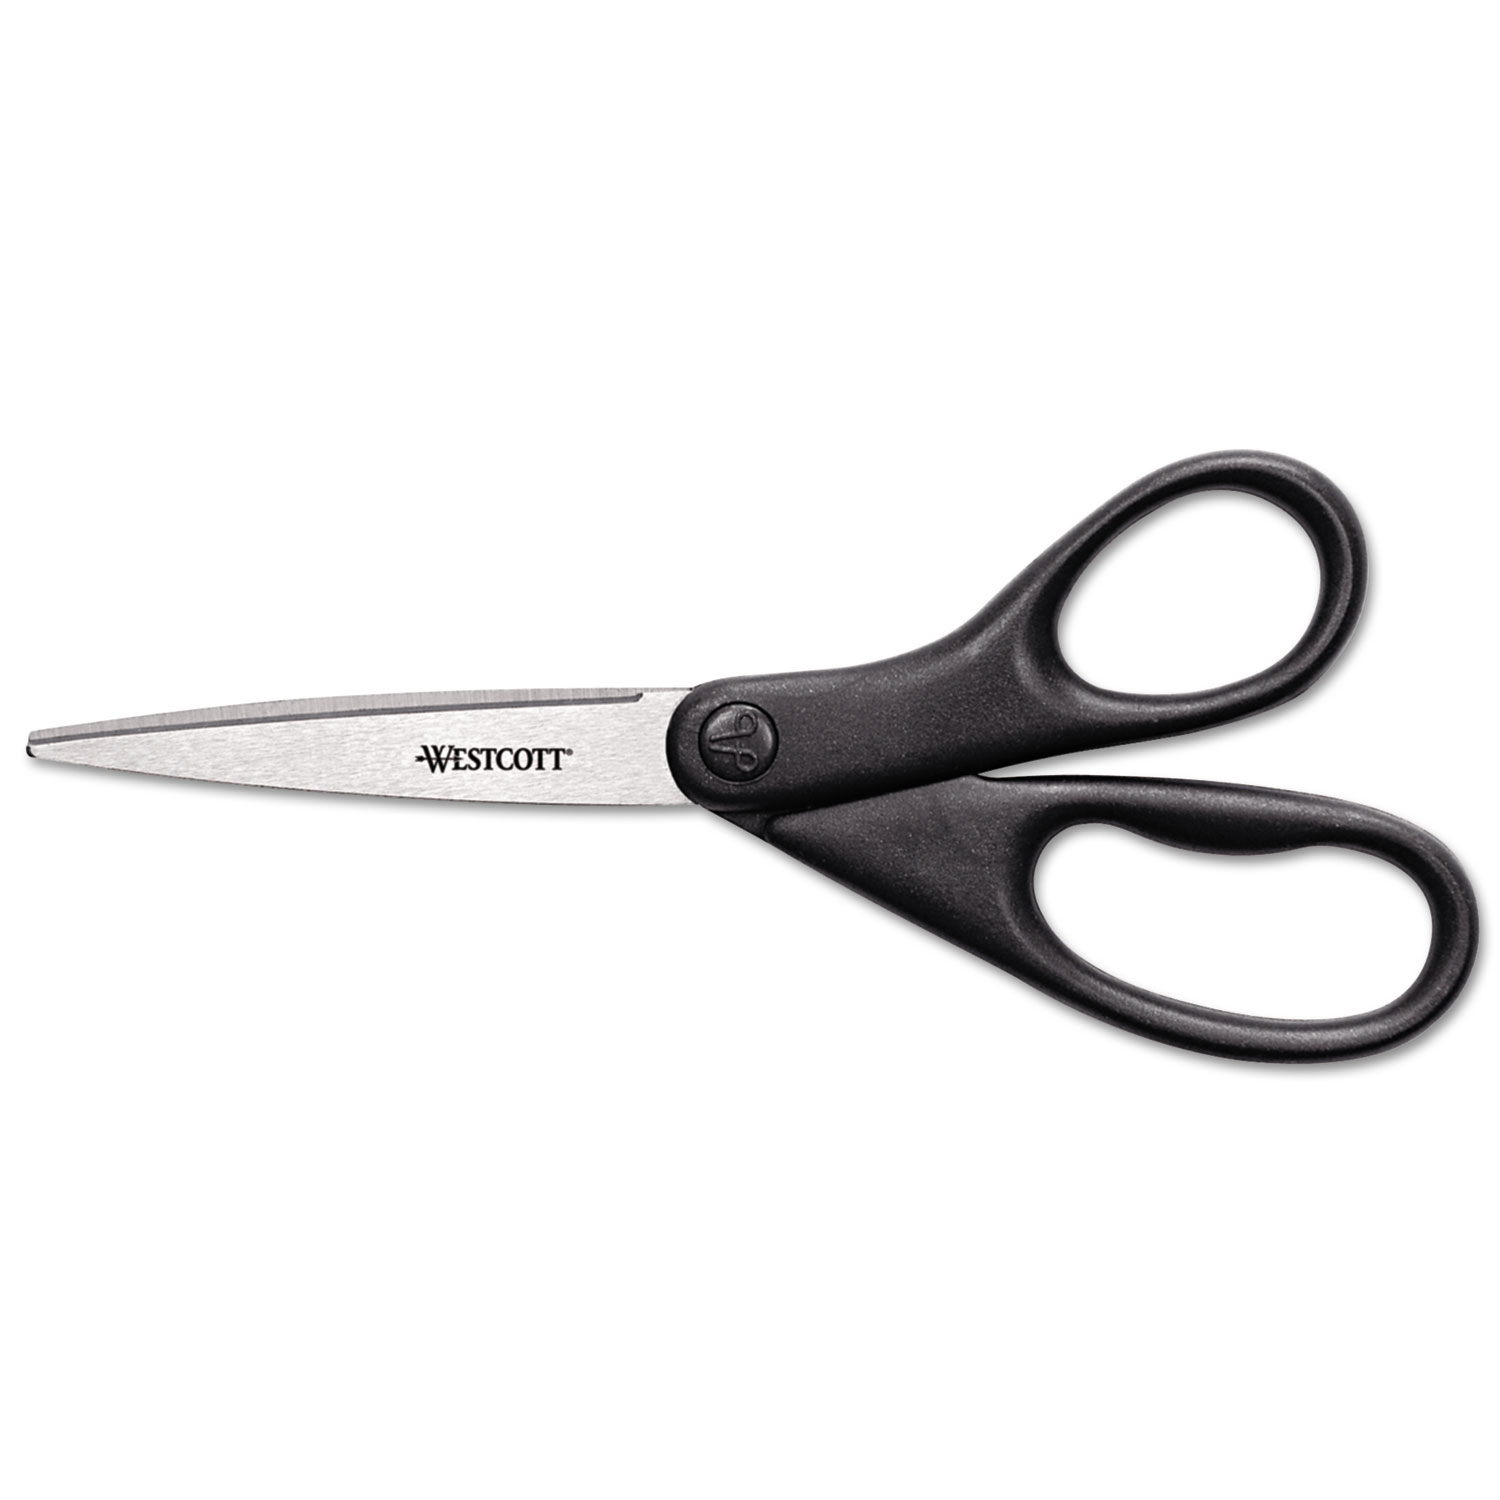 Westcott Preferred Line Stainless Steel Scissors, 7 in, Blue